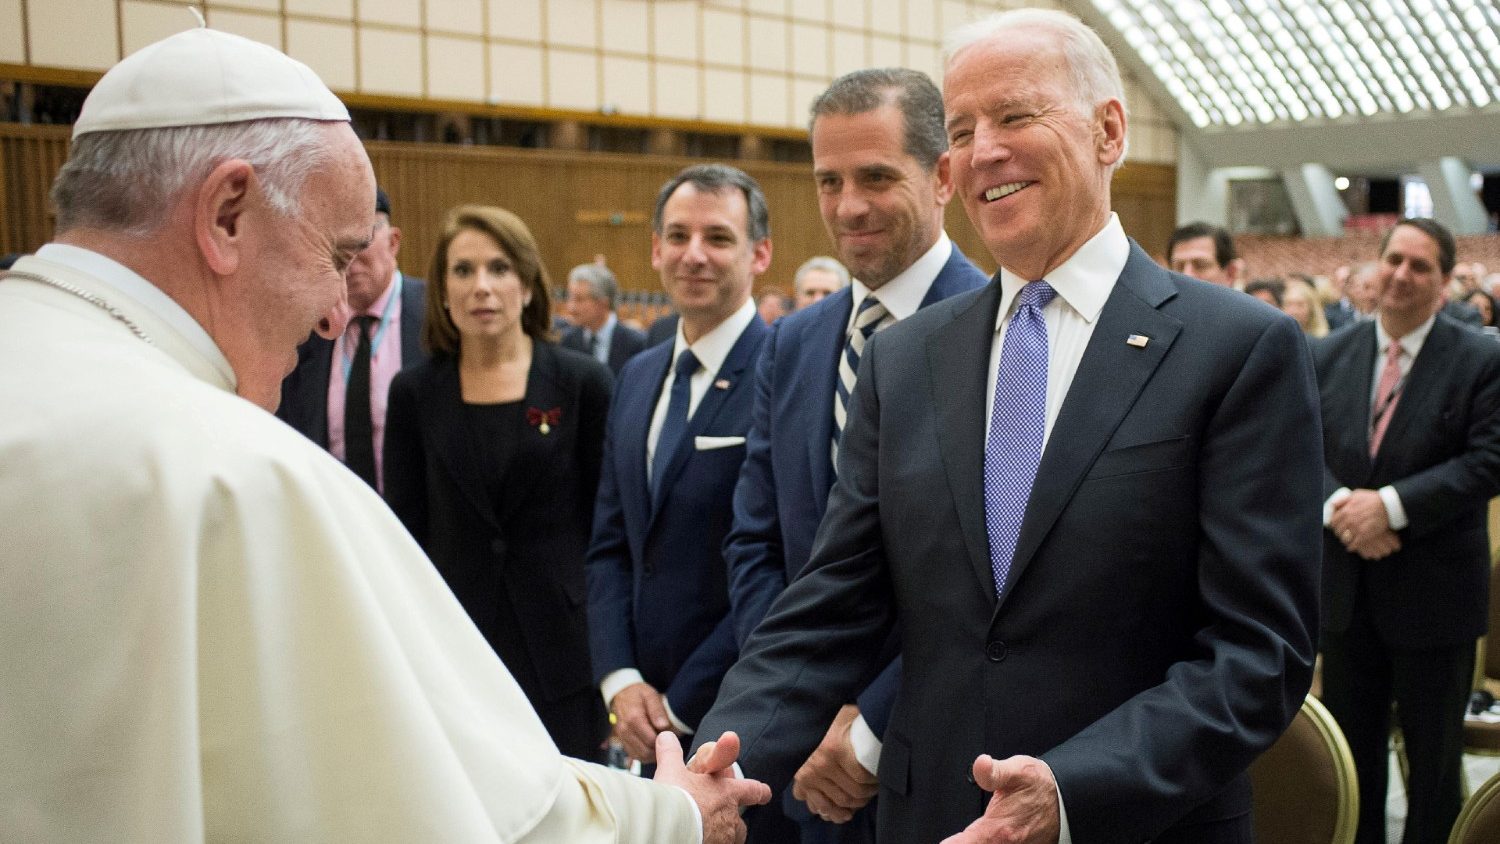 Papa Francesco, Joe Biden preoccupato per le condizioni di salute: "E' un caro amico"